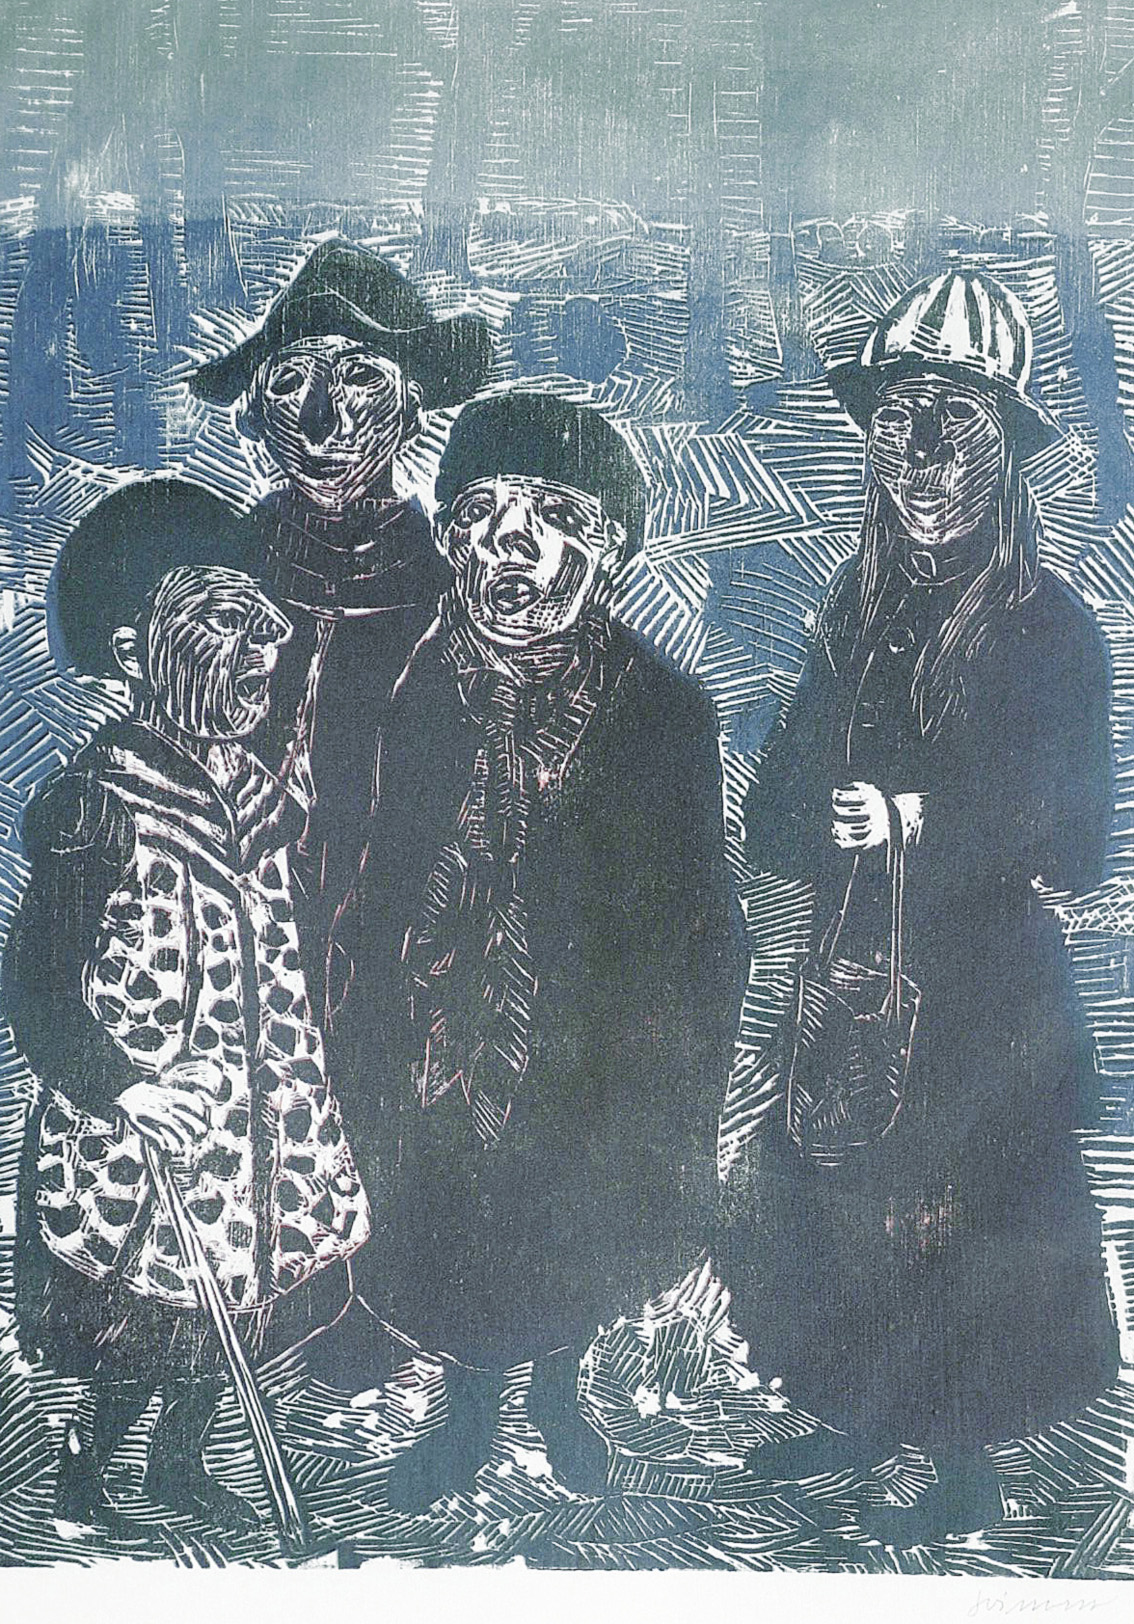 Four masked children